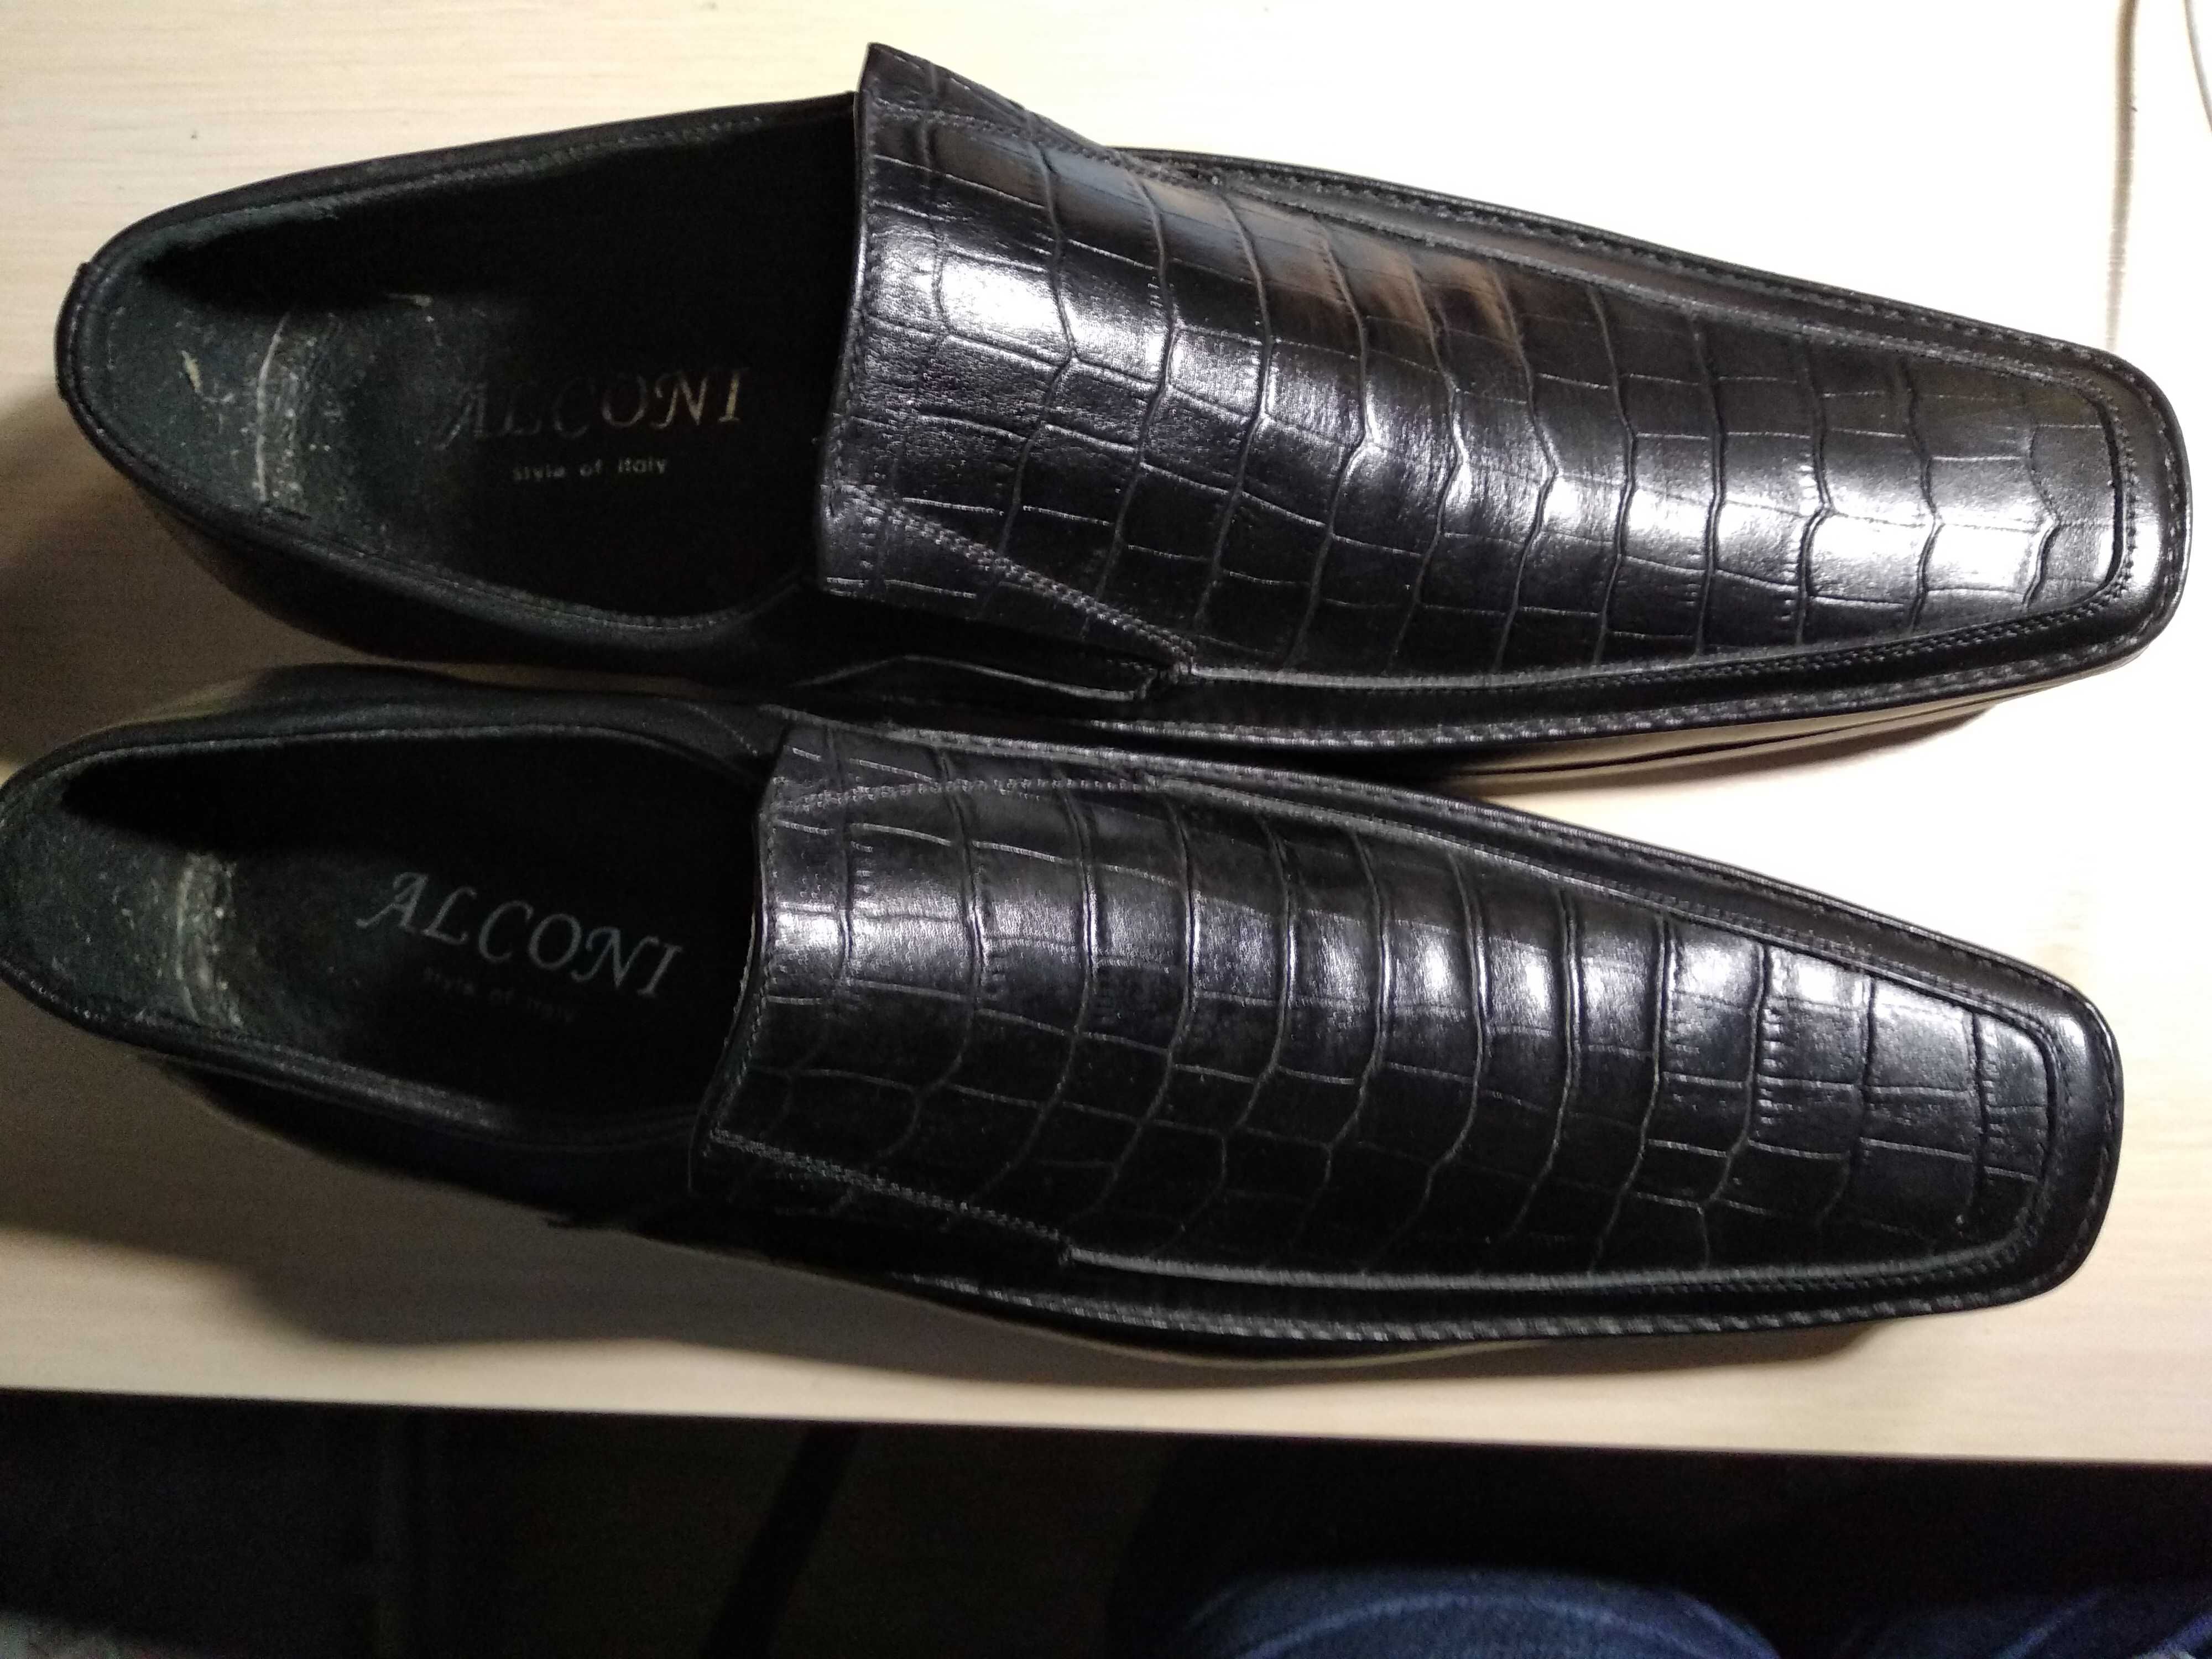 Продам туфли мужские кожаные Alconi